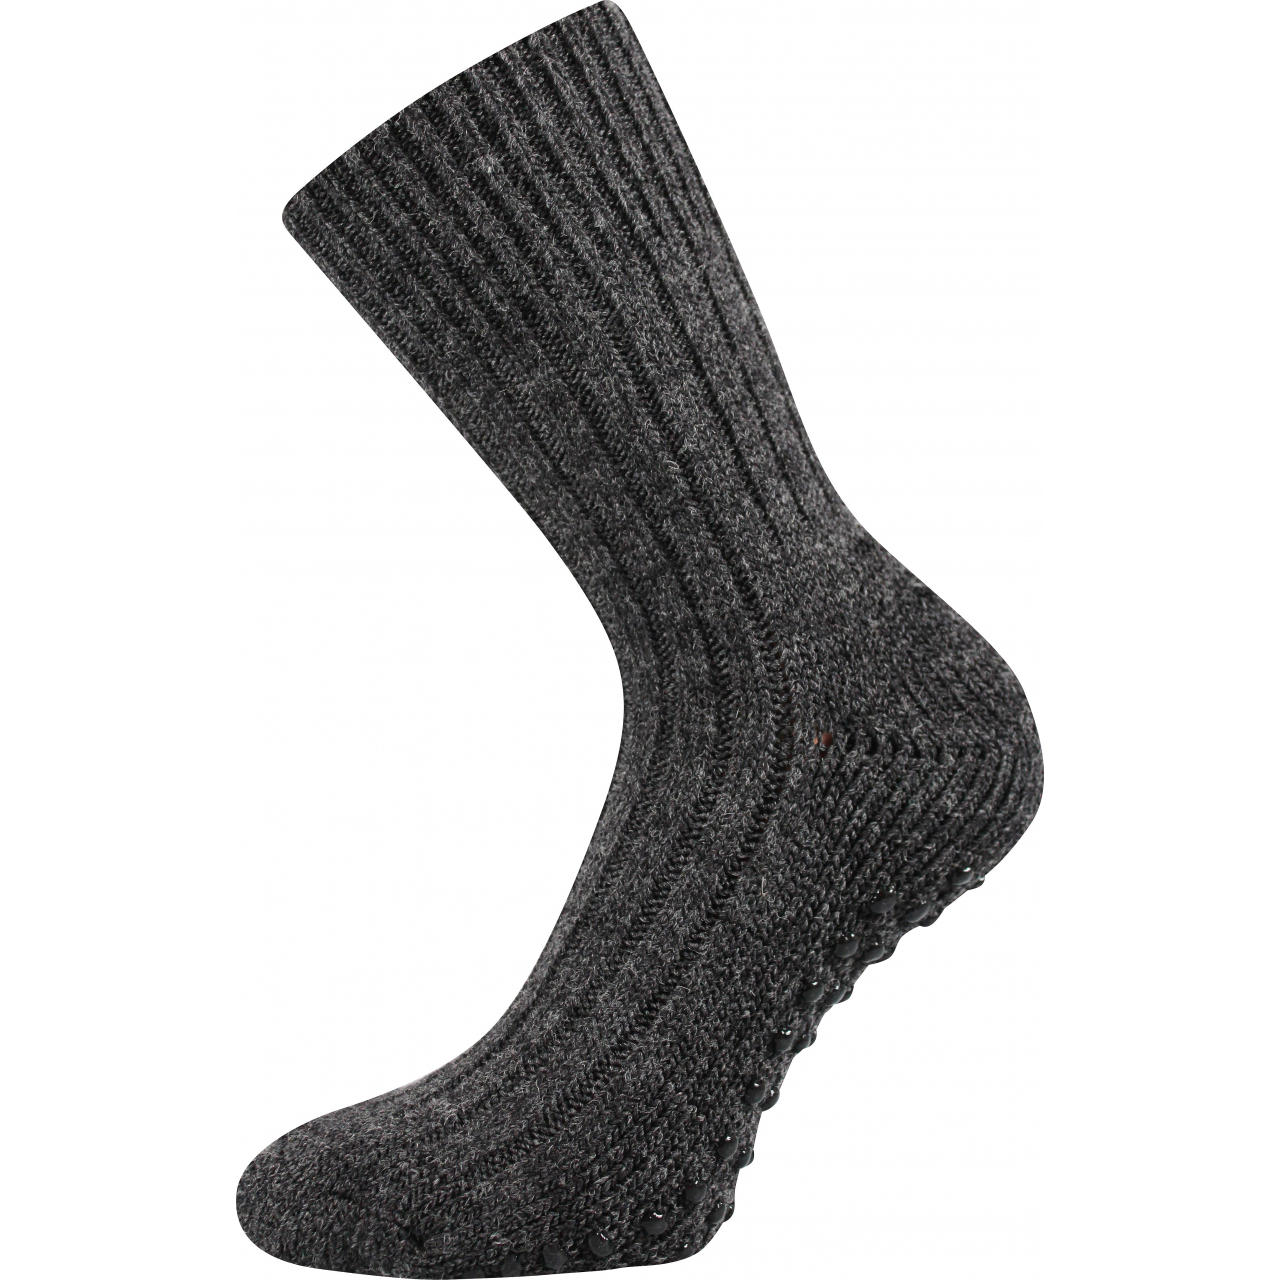 Ponožky unisex vlněné Voxx Willie ABS - tmavě šedé, 35-38